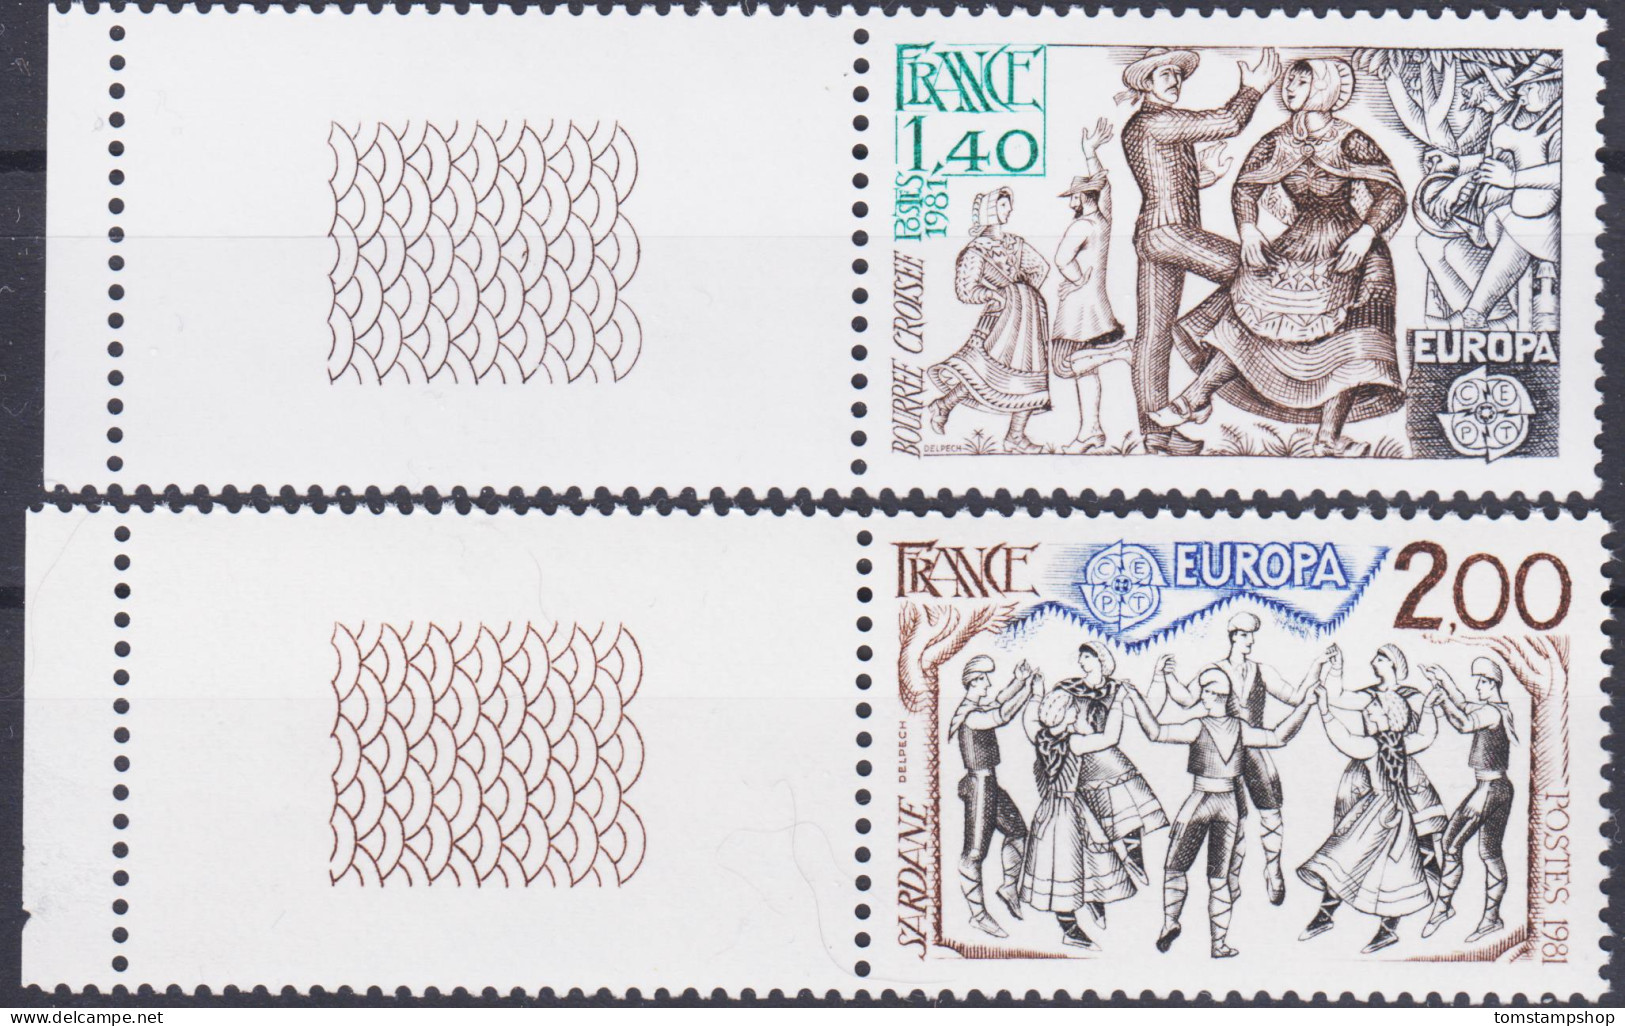 France 1981 Danse,Musique,Musiciens,Folklore,Costumes,Europe,MNH/1 - Musique